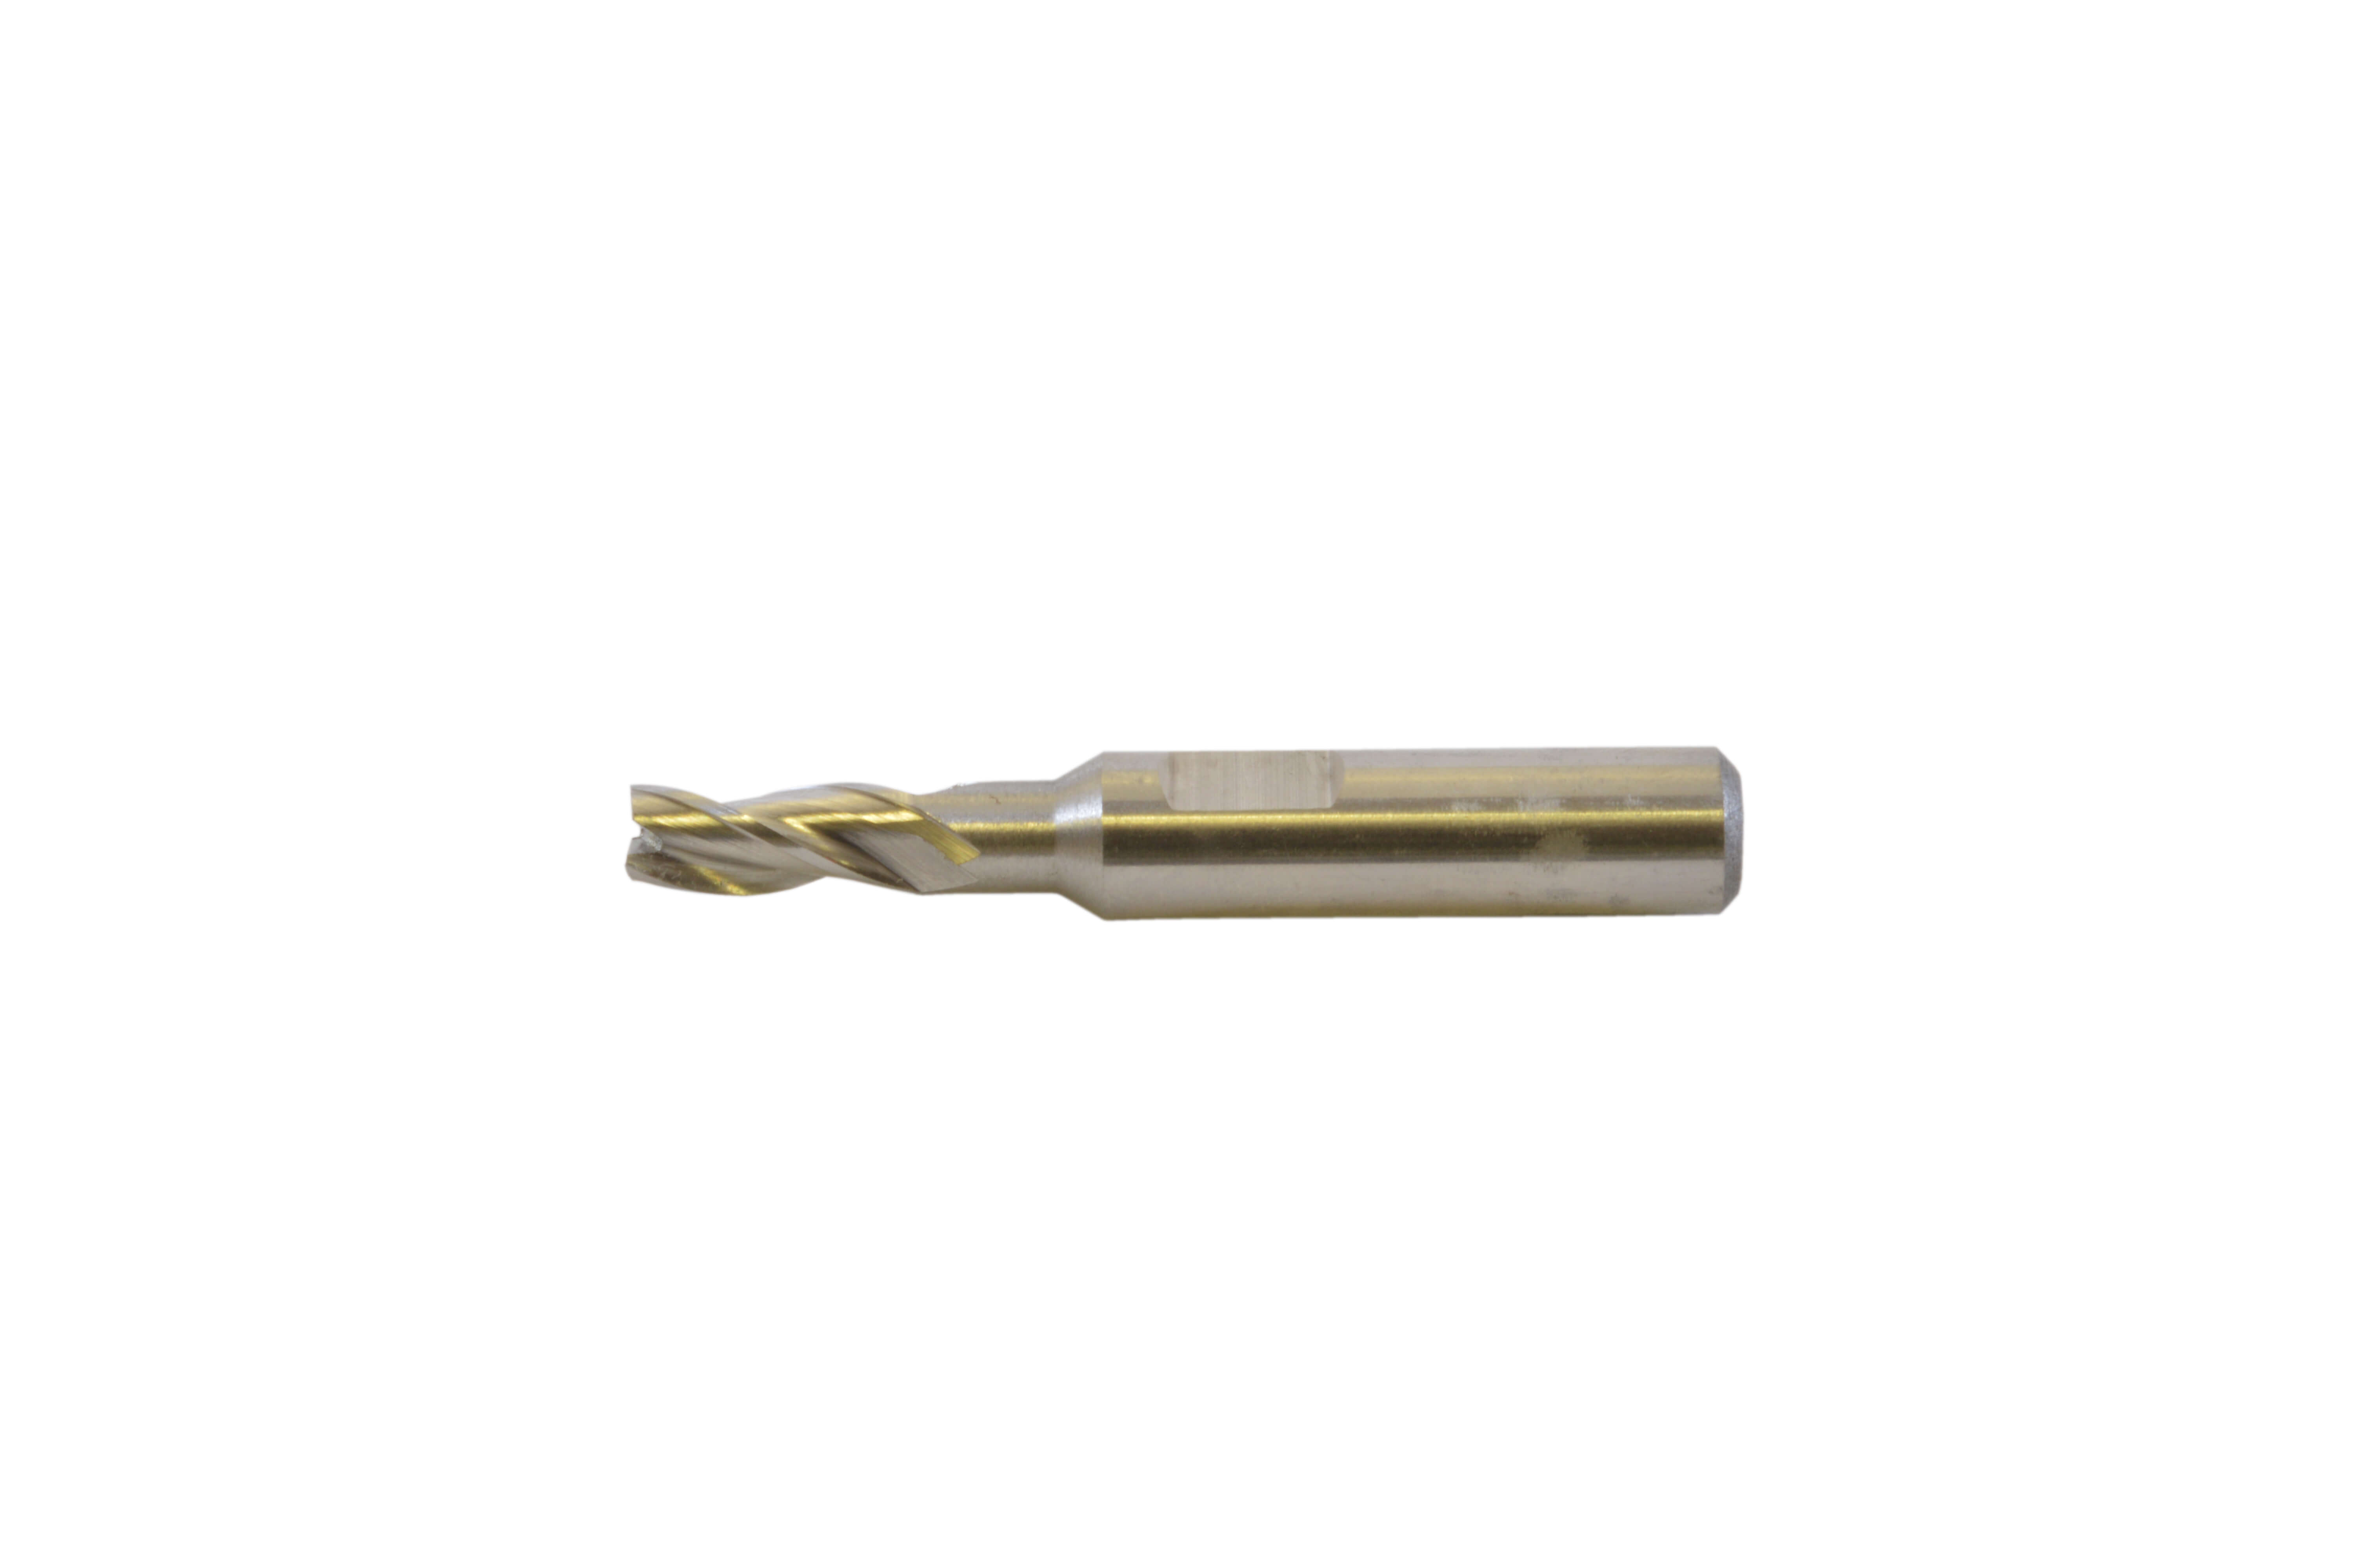 Borman HSS Small Milling Cutter - Long Series - 3.5mm